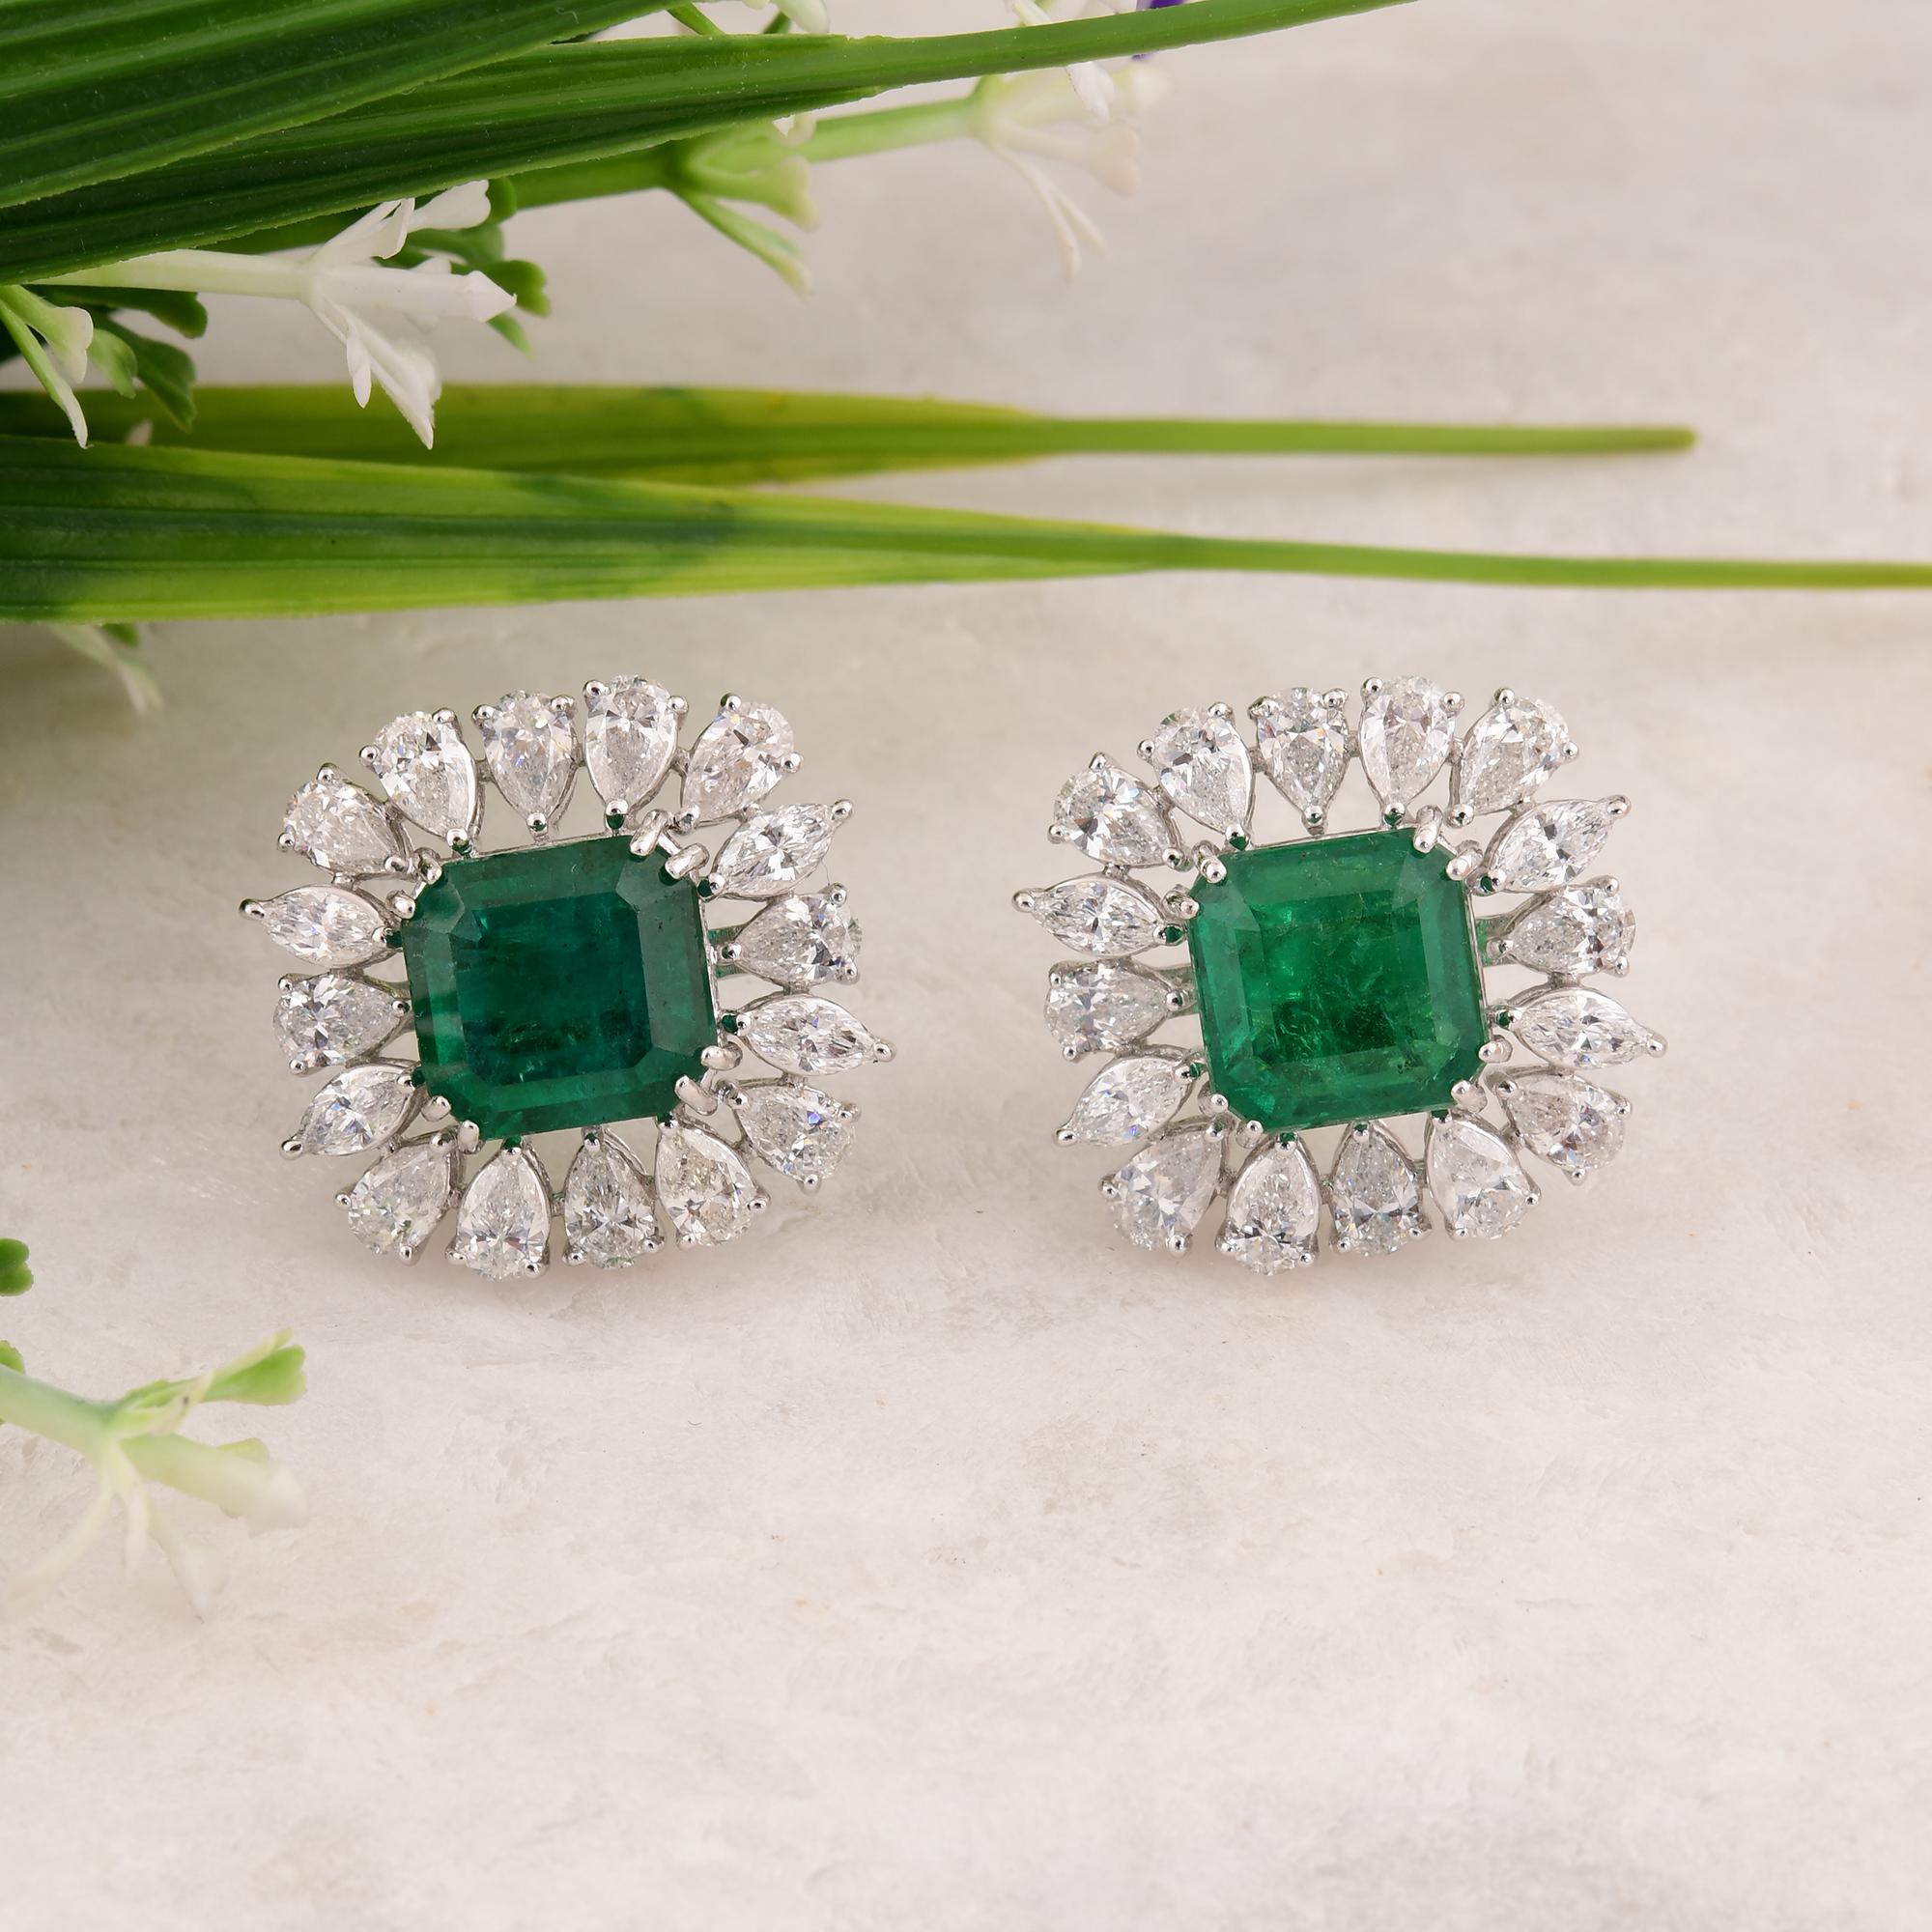 Pear Cut Zambian Emerald Gemstone Stud Earrings Pear Diamond 14 Karat White Gold Jewelry For Sale